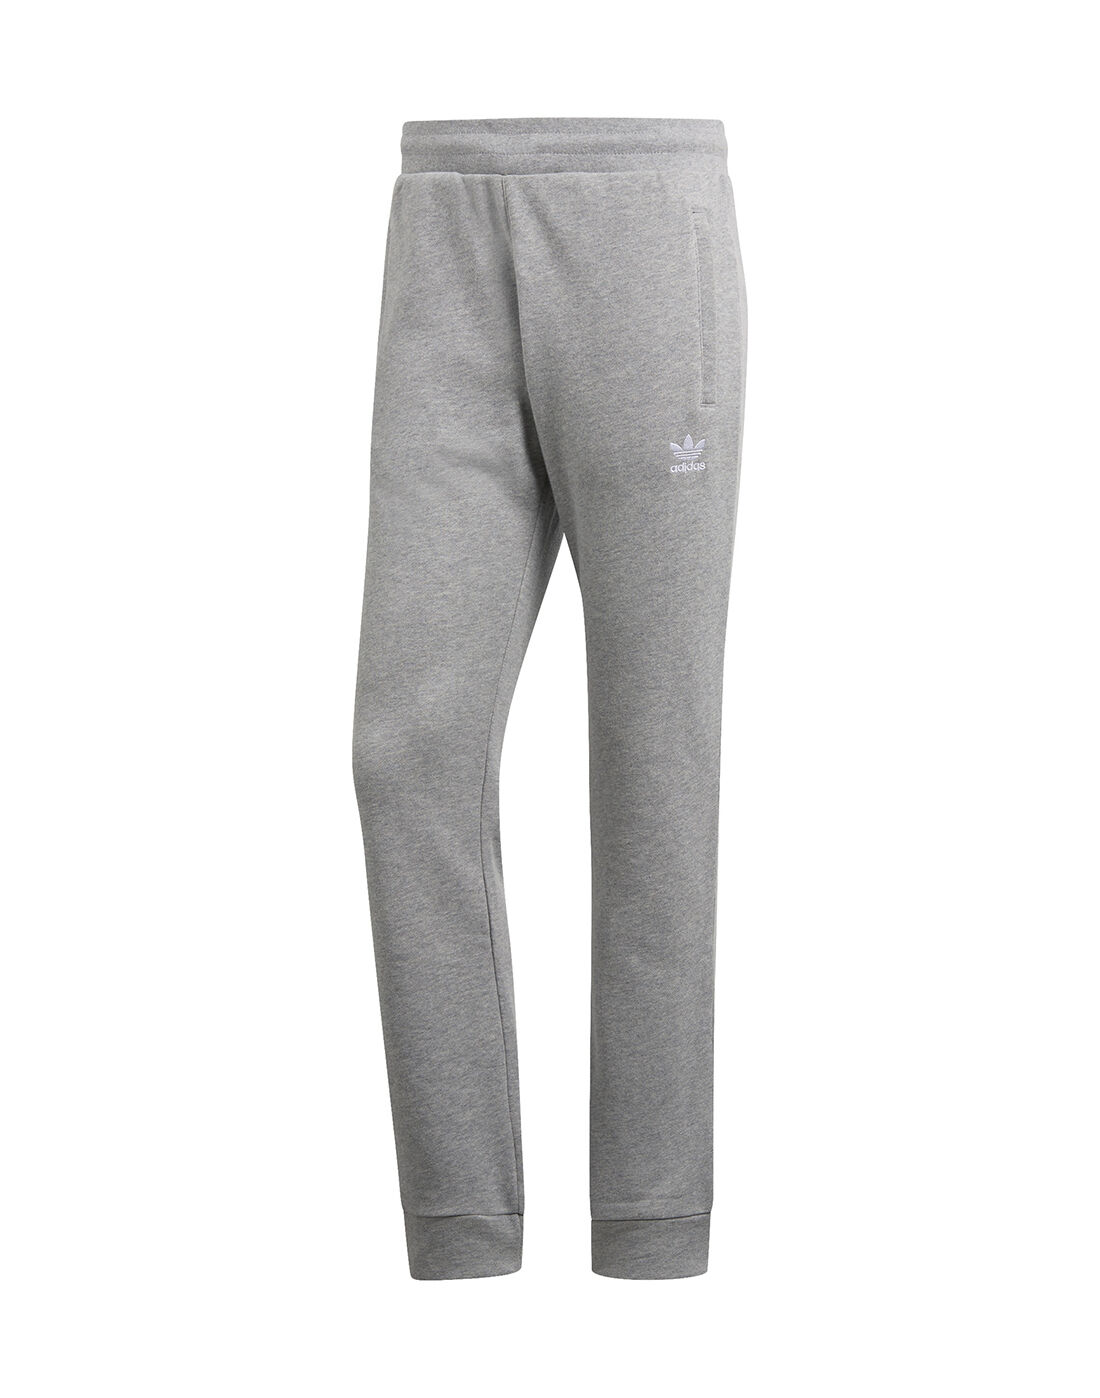 Men's Grey adidas Originals Track Pants 